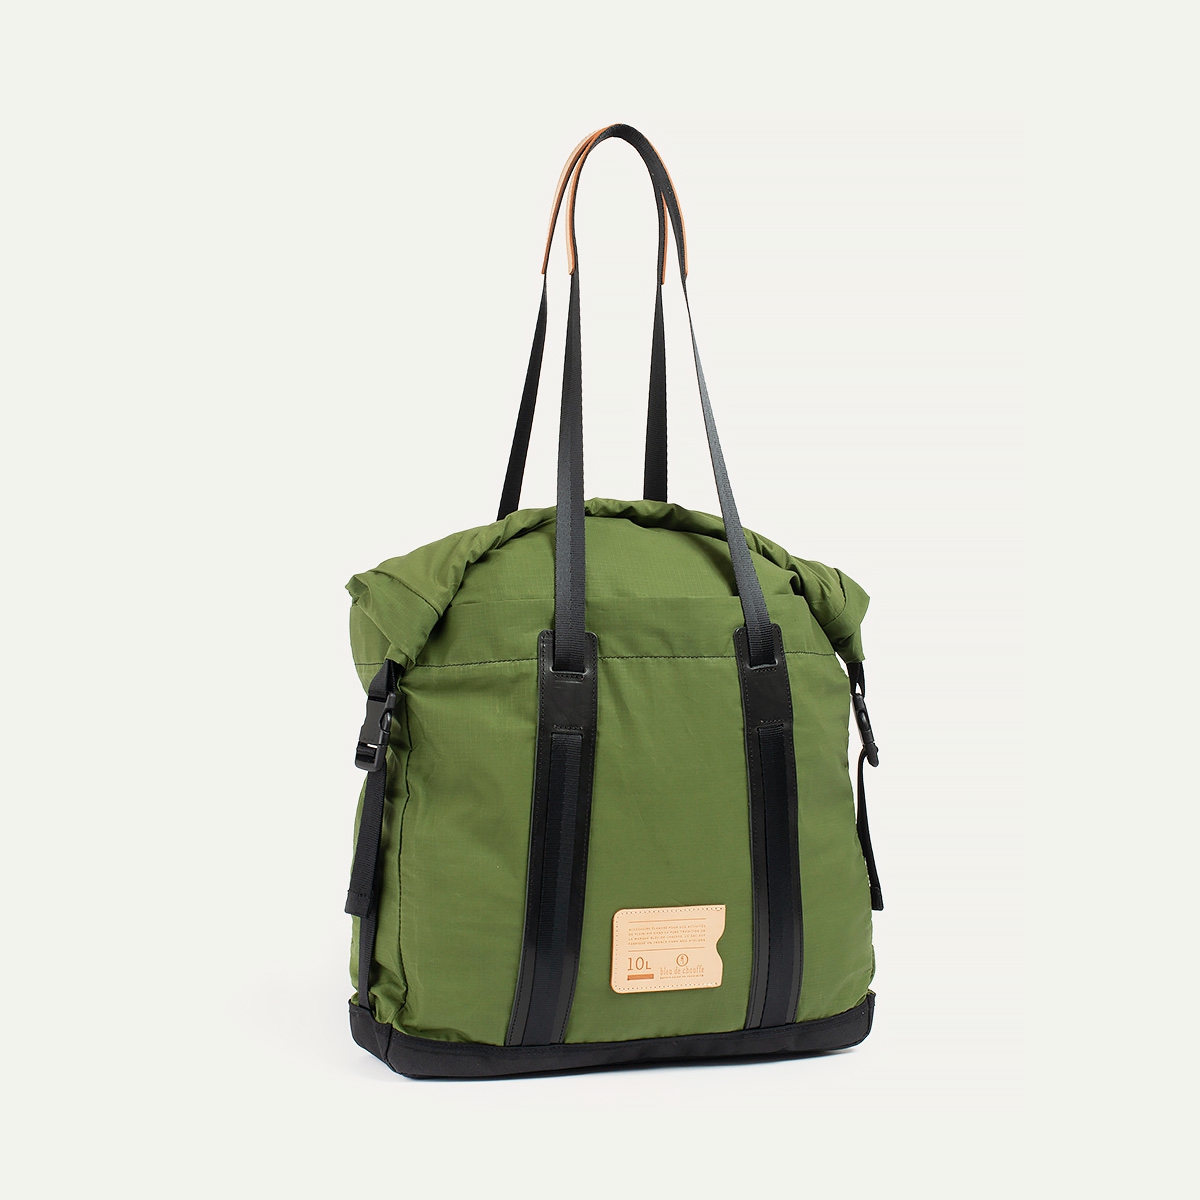 10L Barda Tote bag - Bancha Green (image n°2)